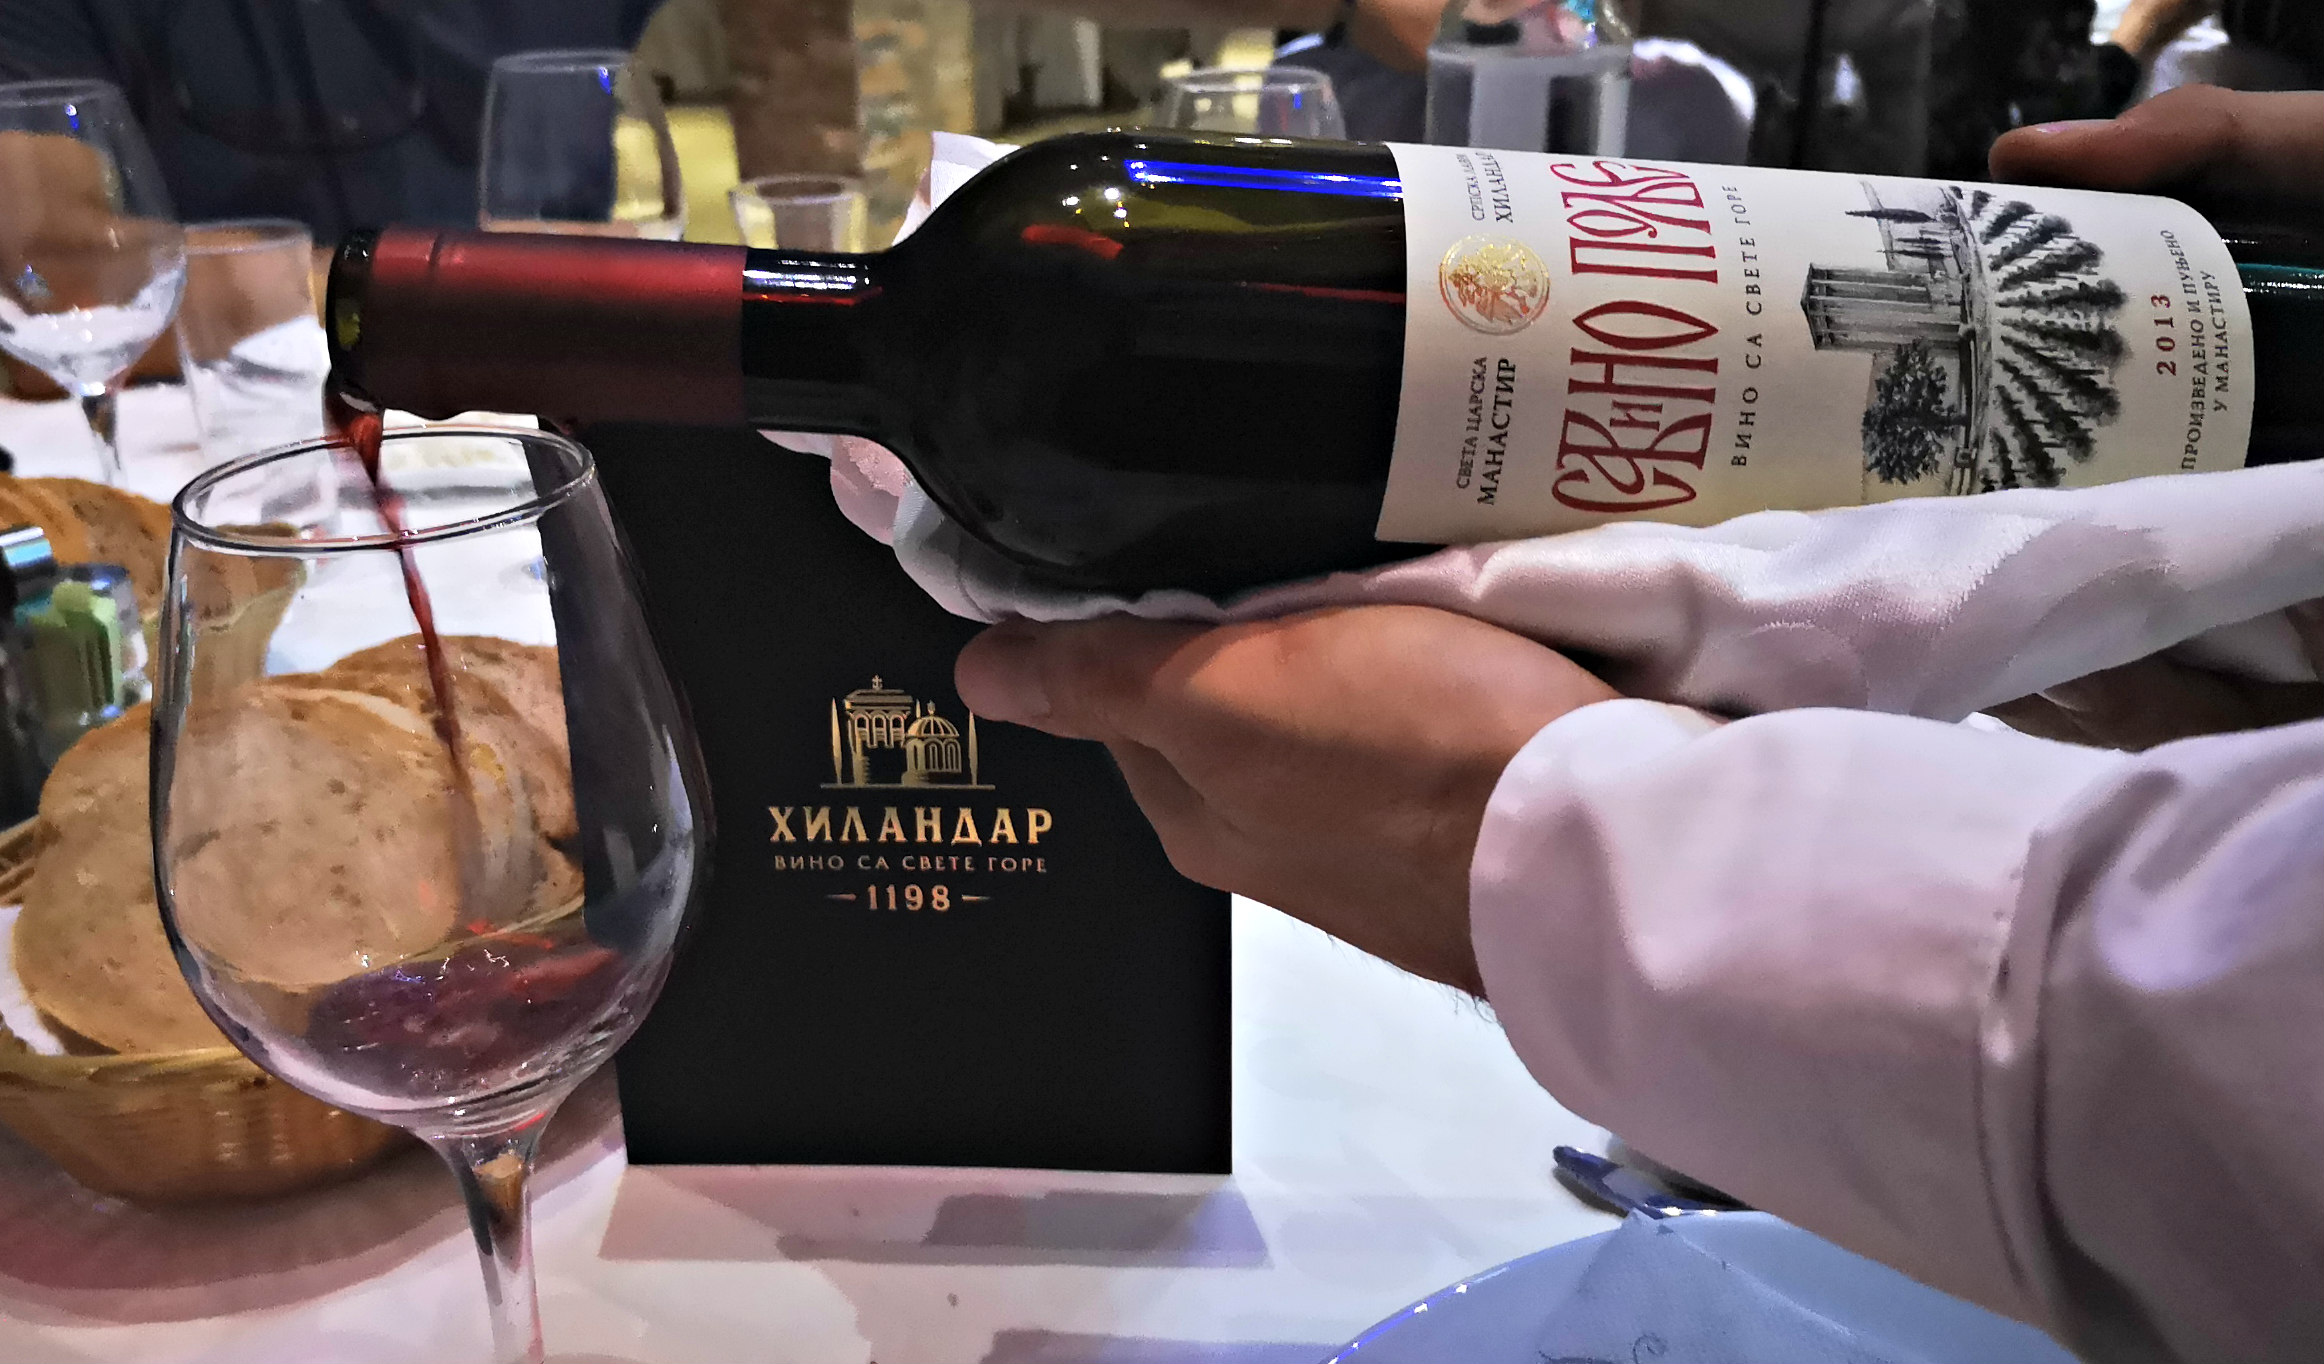 Промоција хиландарских вина у Хотелу Светионик